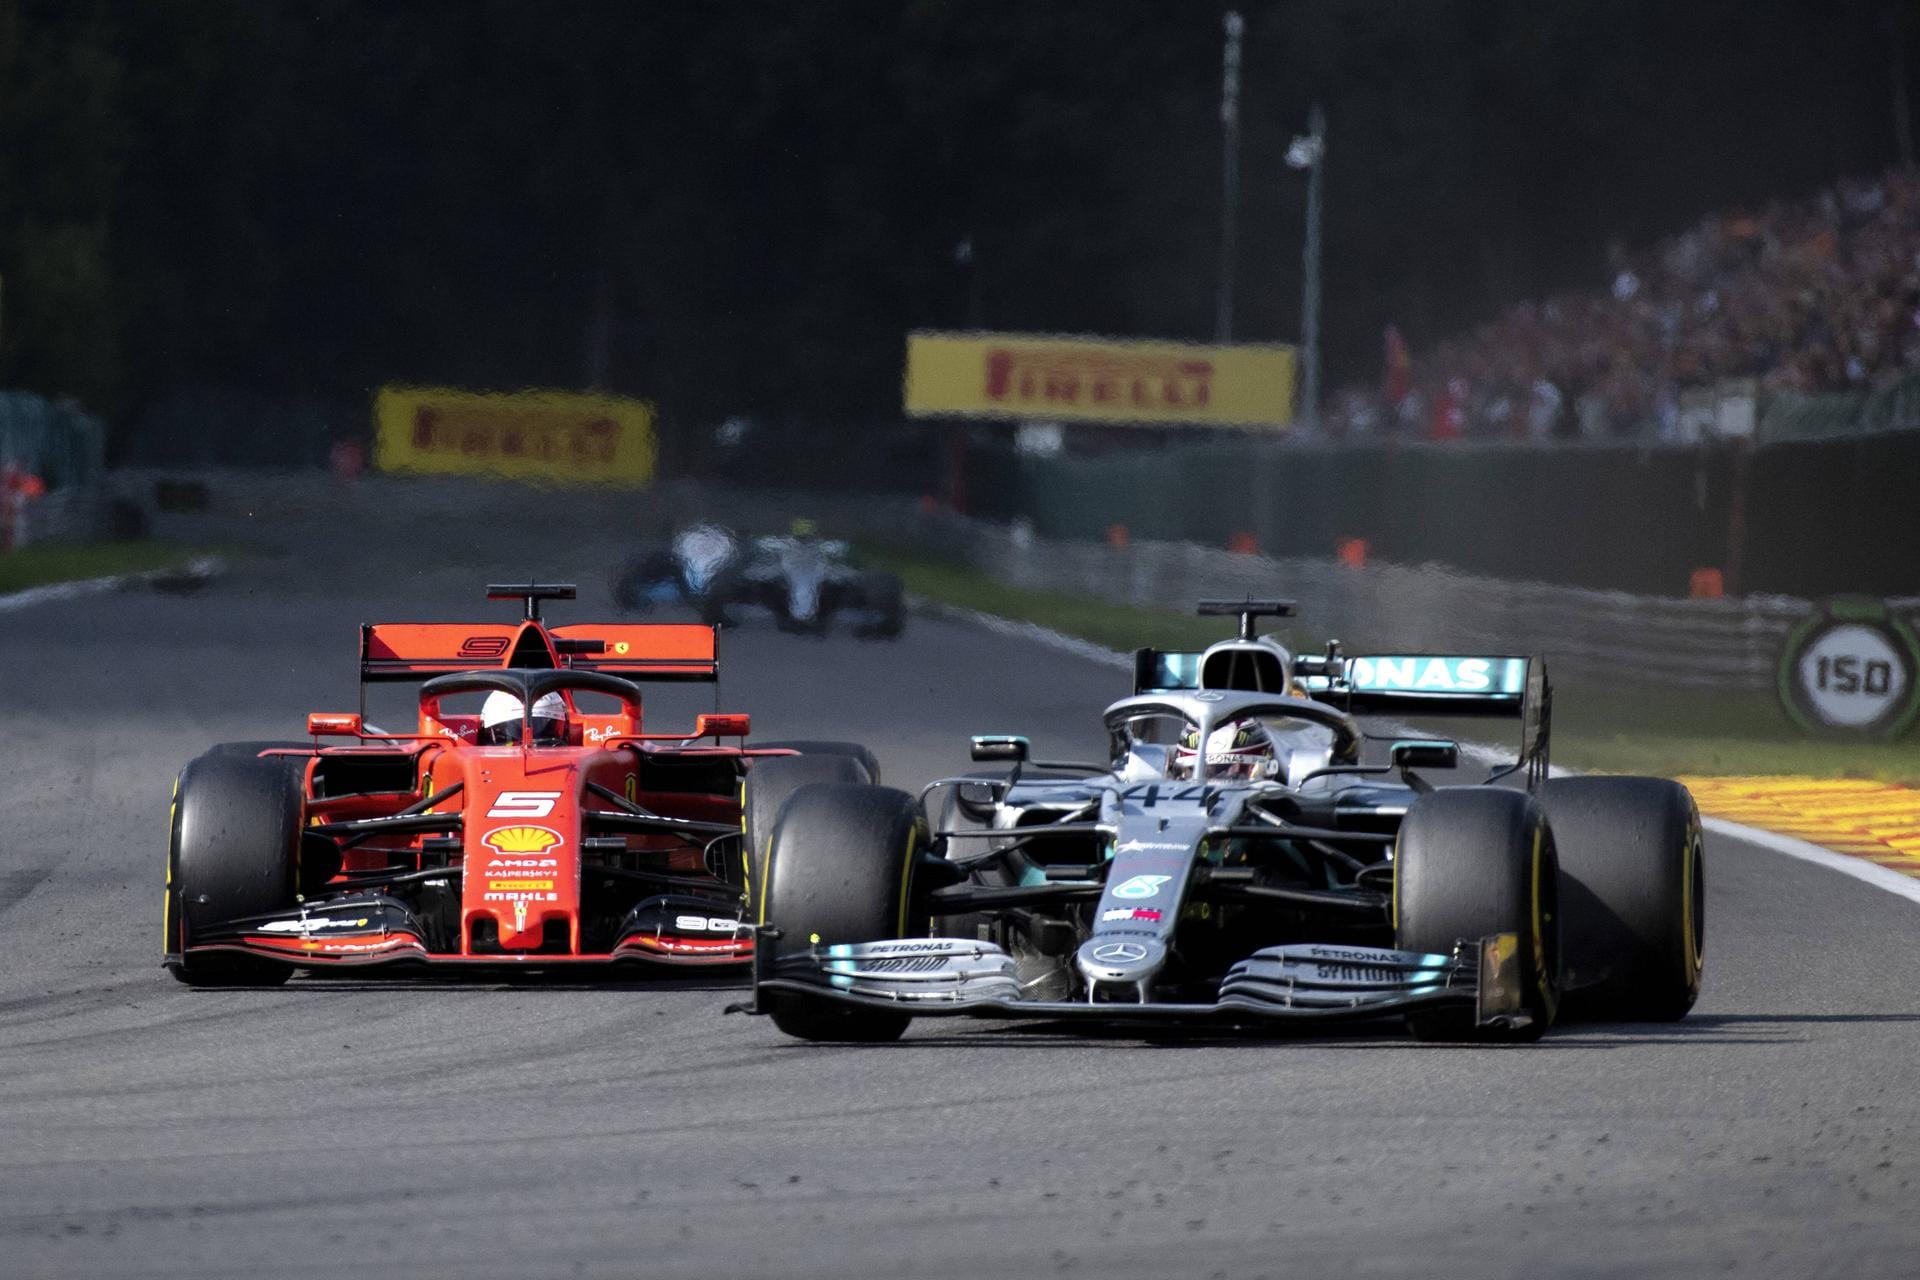 Großer Preis von Belgien: Ein ganz bitteres Rennen für Vettel. Teamkollege Leclerc deklassiert den erfahrenen Piloten komplett, fährt mit einer überragenden Leistung zum Sieg, Vettel muss auch noch Hamilton und Valtteri Bottas vorbeiziehen lassen und sich mit Platz vier begnügen.